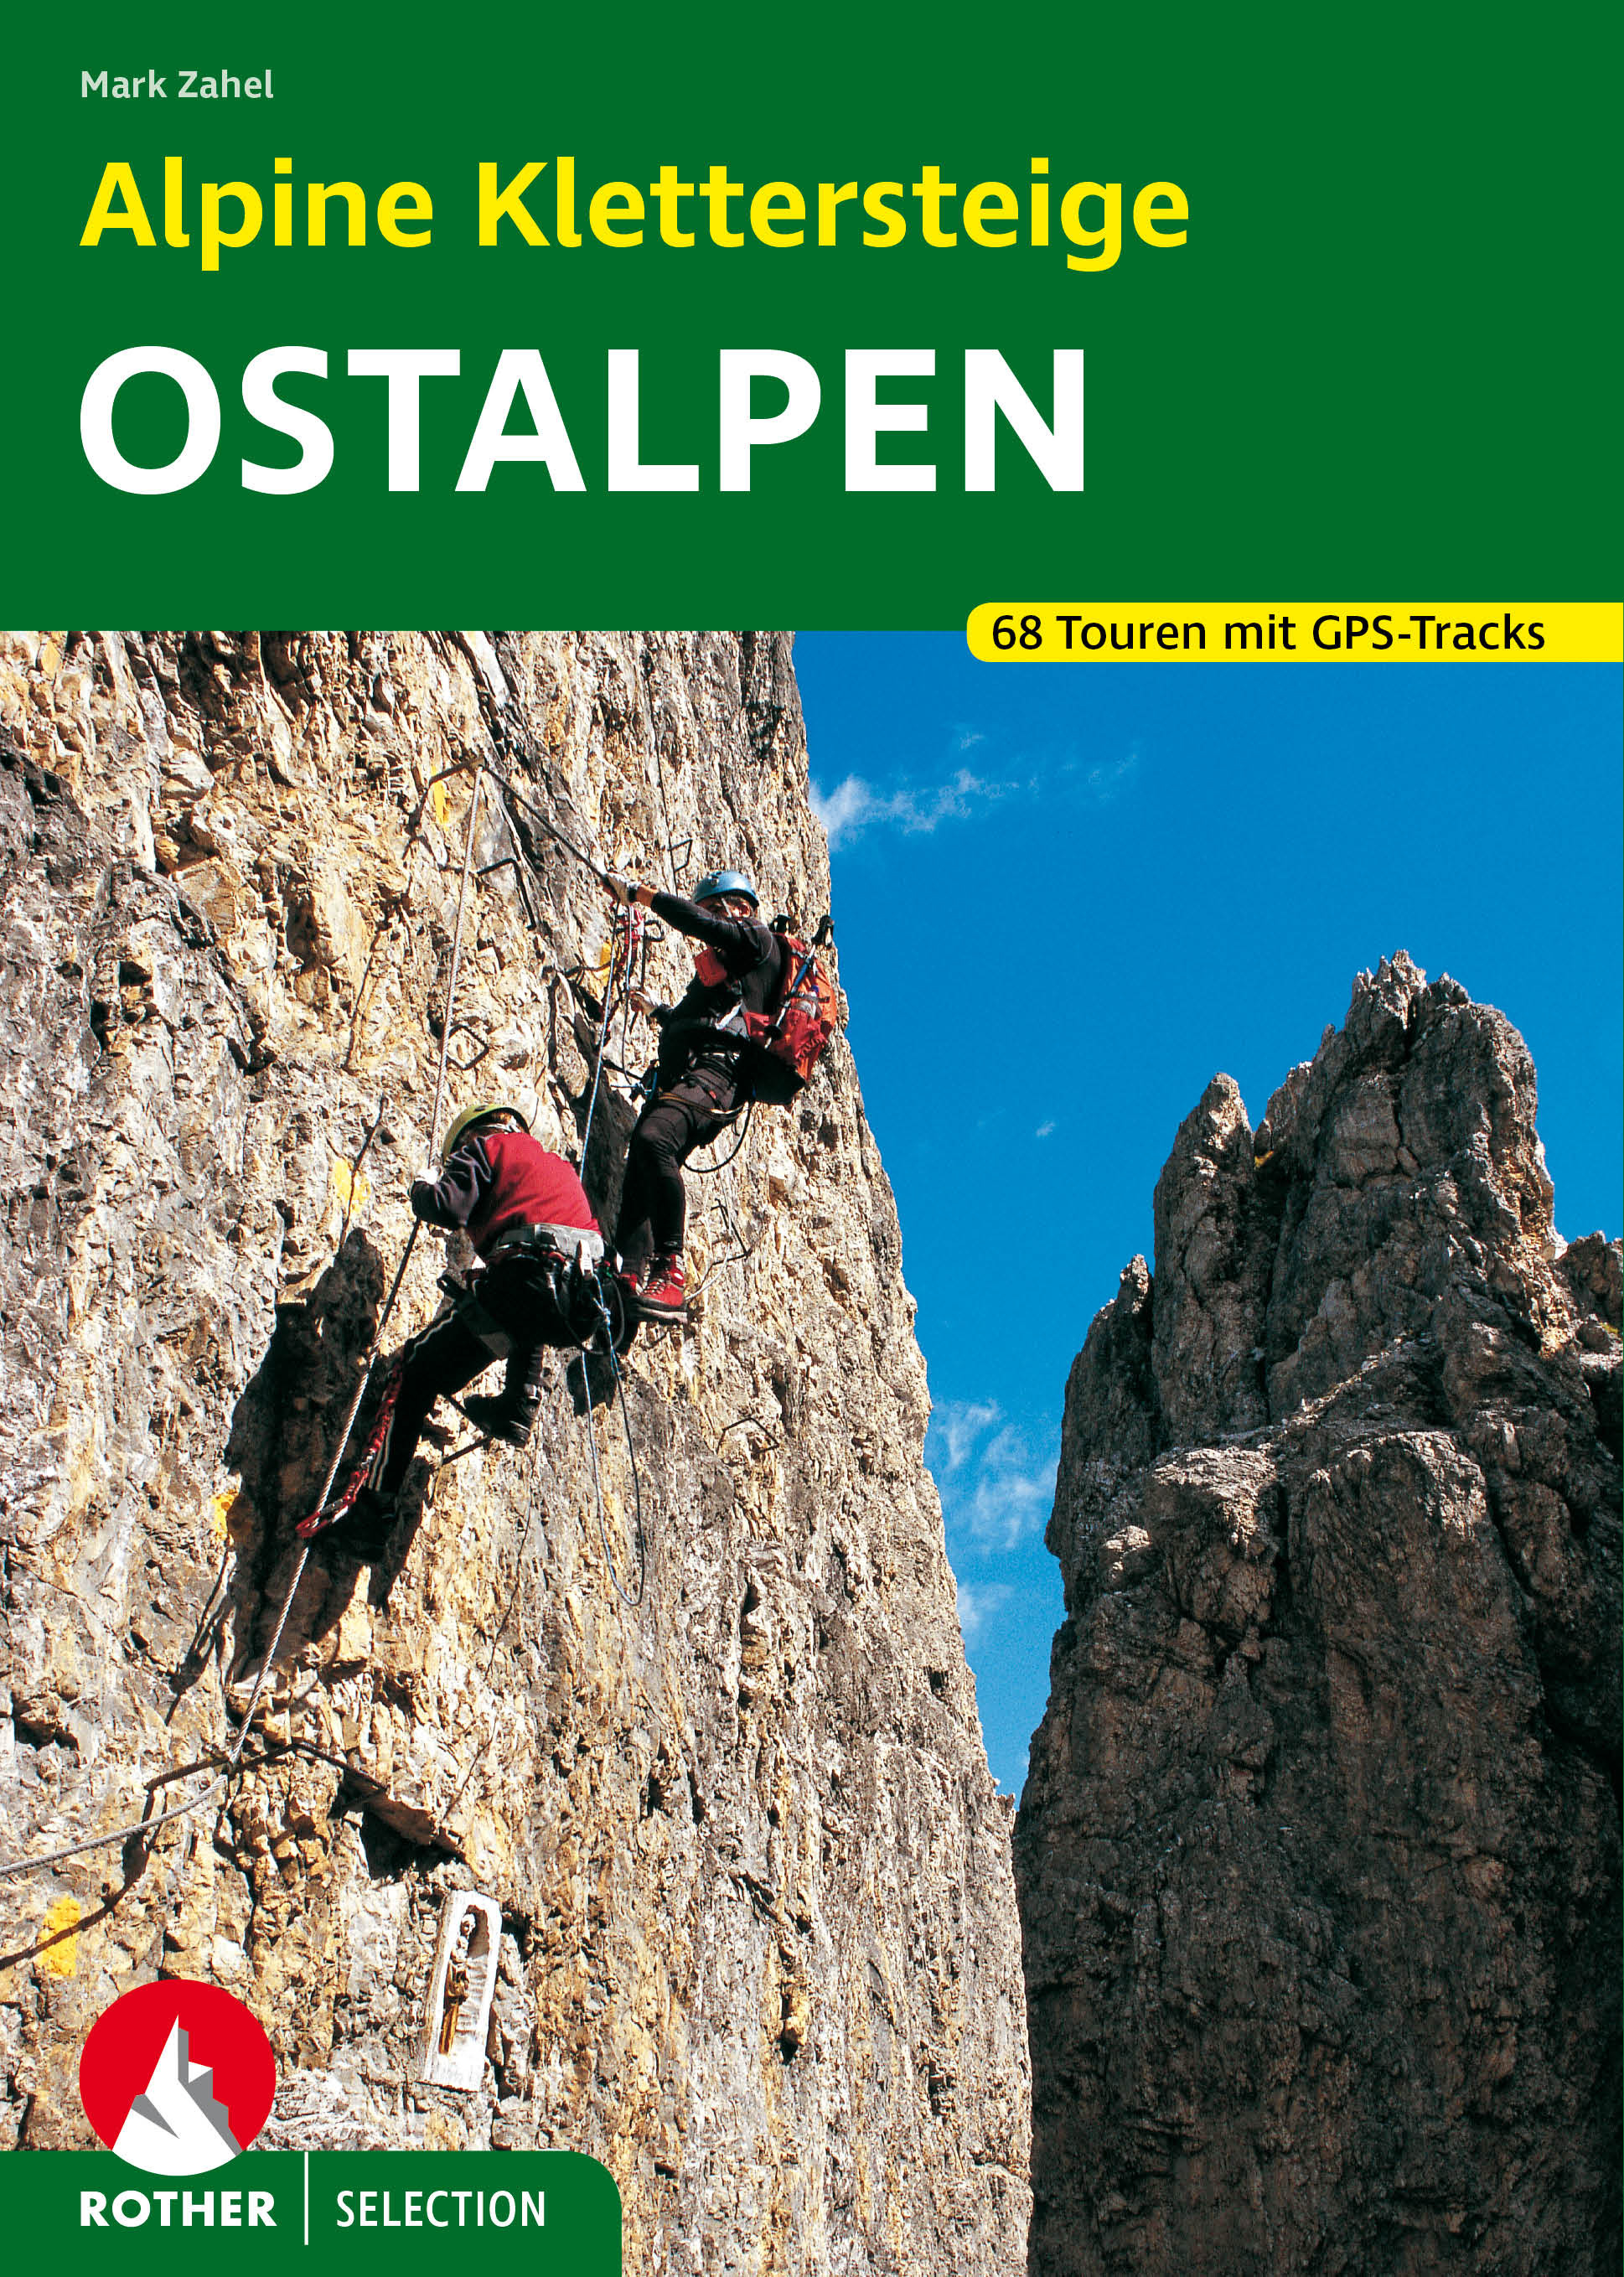 Online bestellen: Klimgids - Klettersteiggids Alpine Klettersteige Ostalpen | Rother Bergverlag